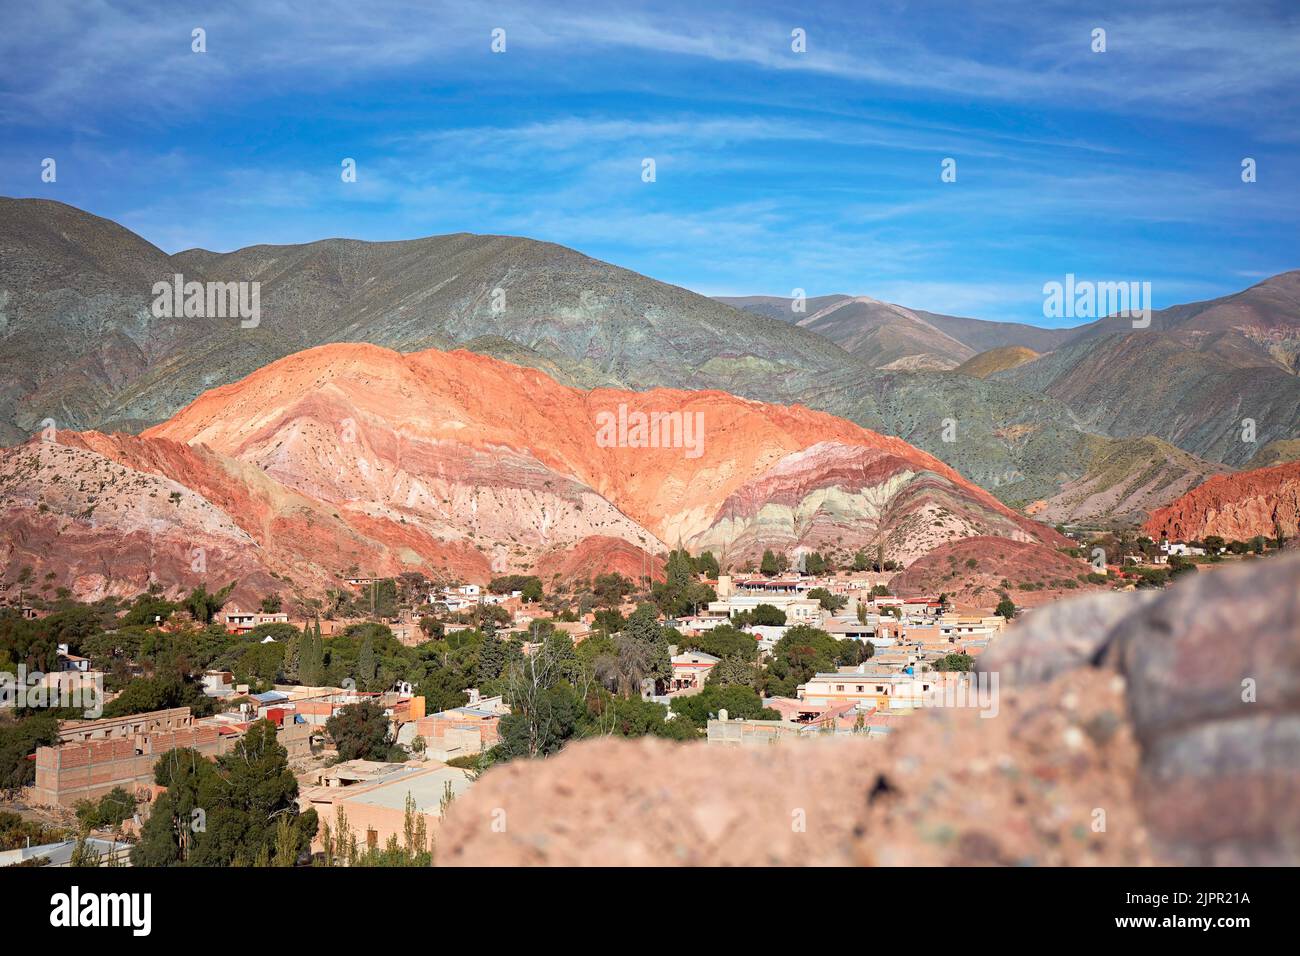 „Cerro de los Siete Colores“ (Hügel mit sieben Farben) in Purmamarca, Quebrada de Humahuaca, Provinz Jujuy, Argentinien. Stockfoto